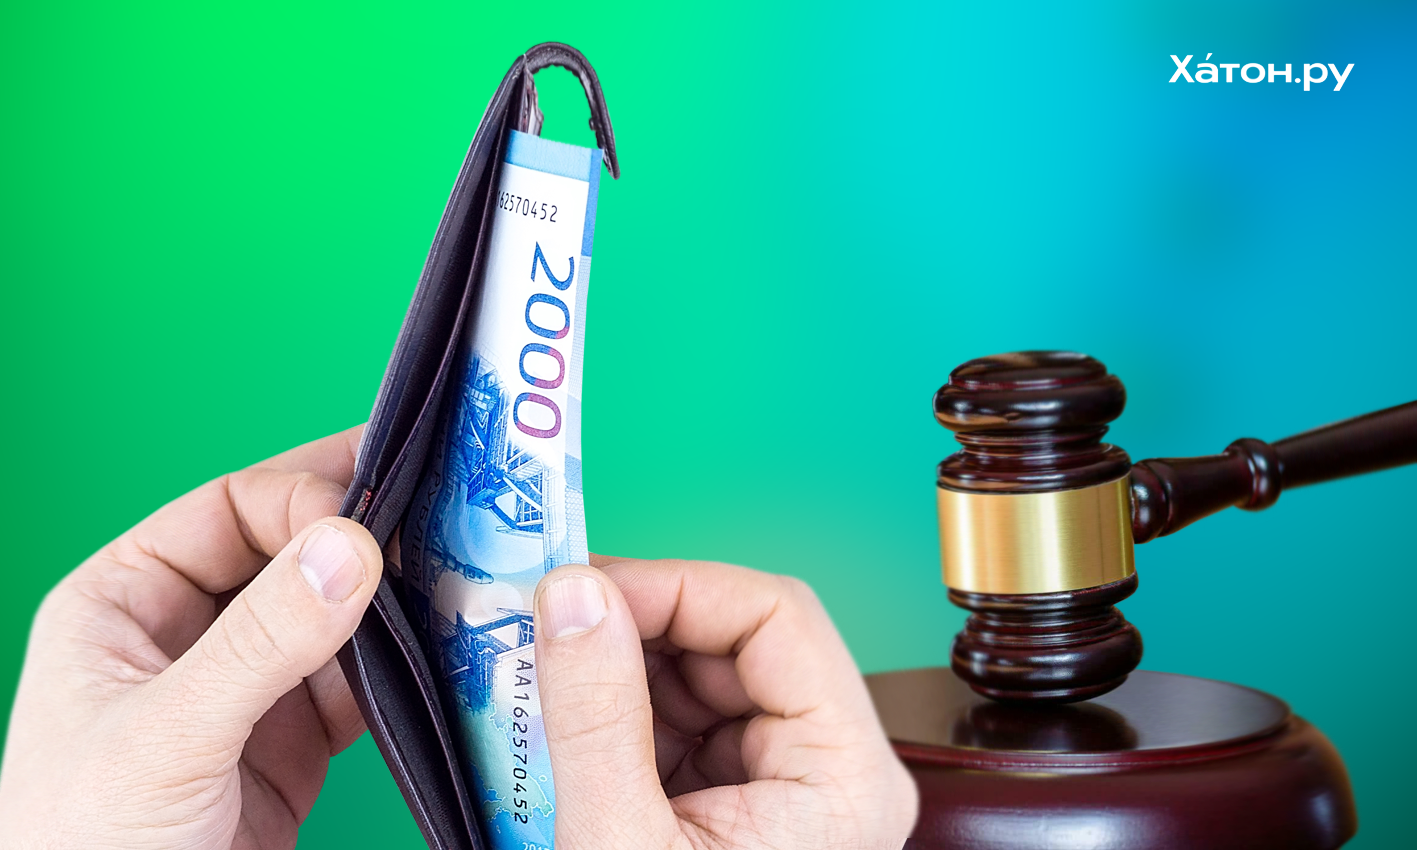 Юрист Соловьёв сообщил россиянам о сохранении части дохода от взысканий банков с 2022 года